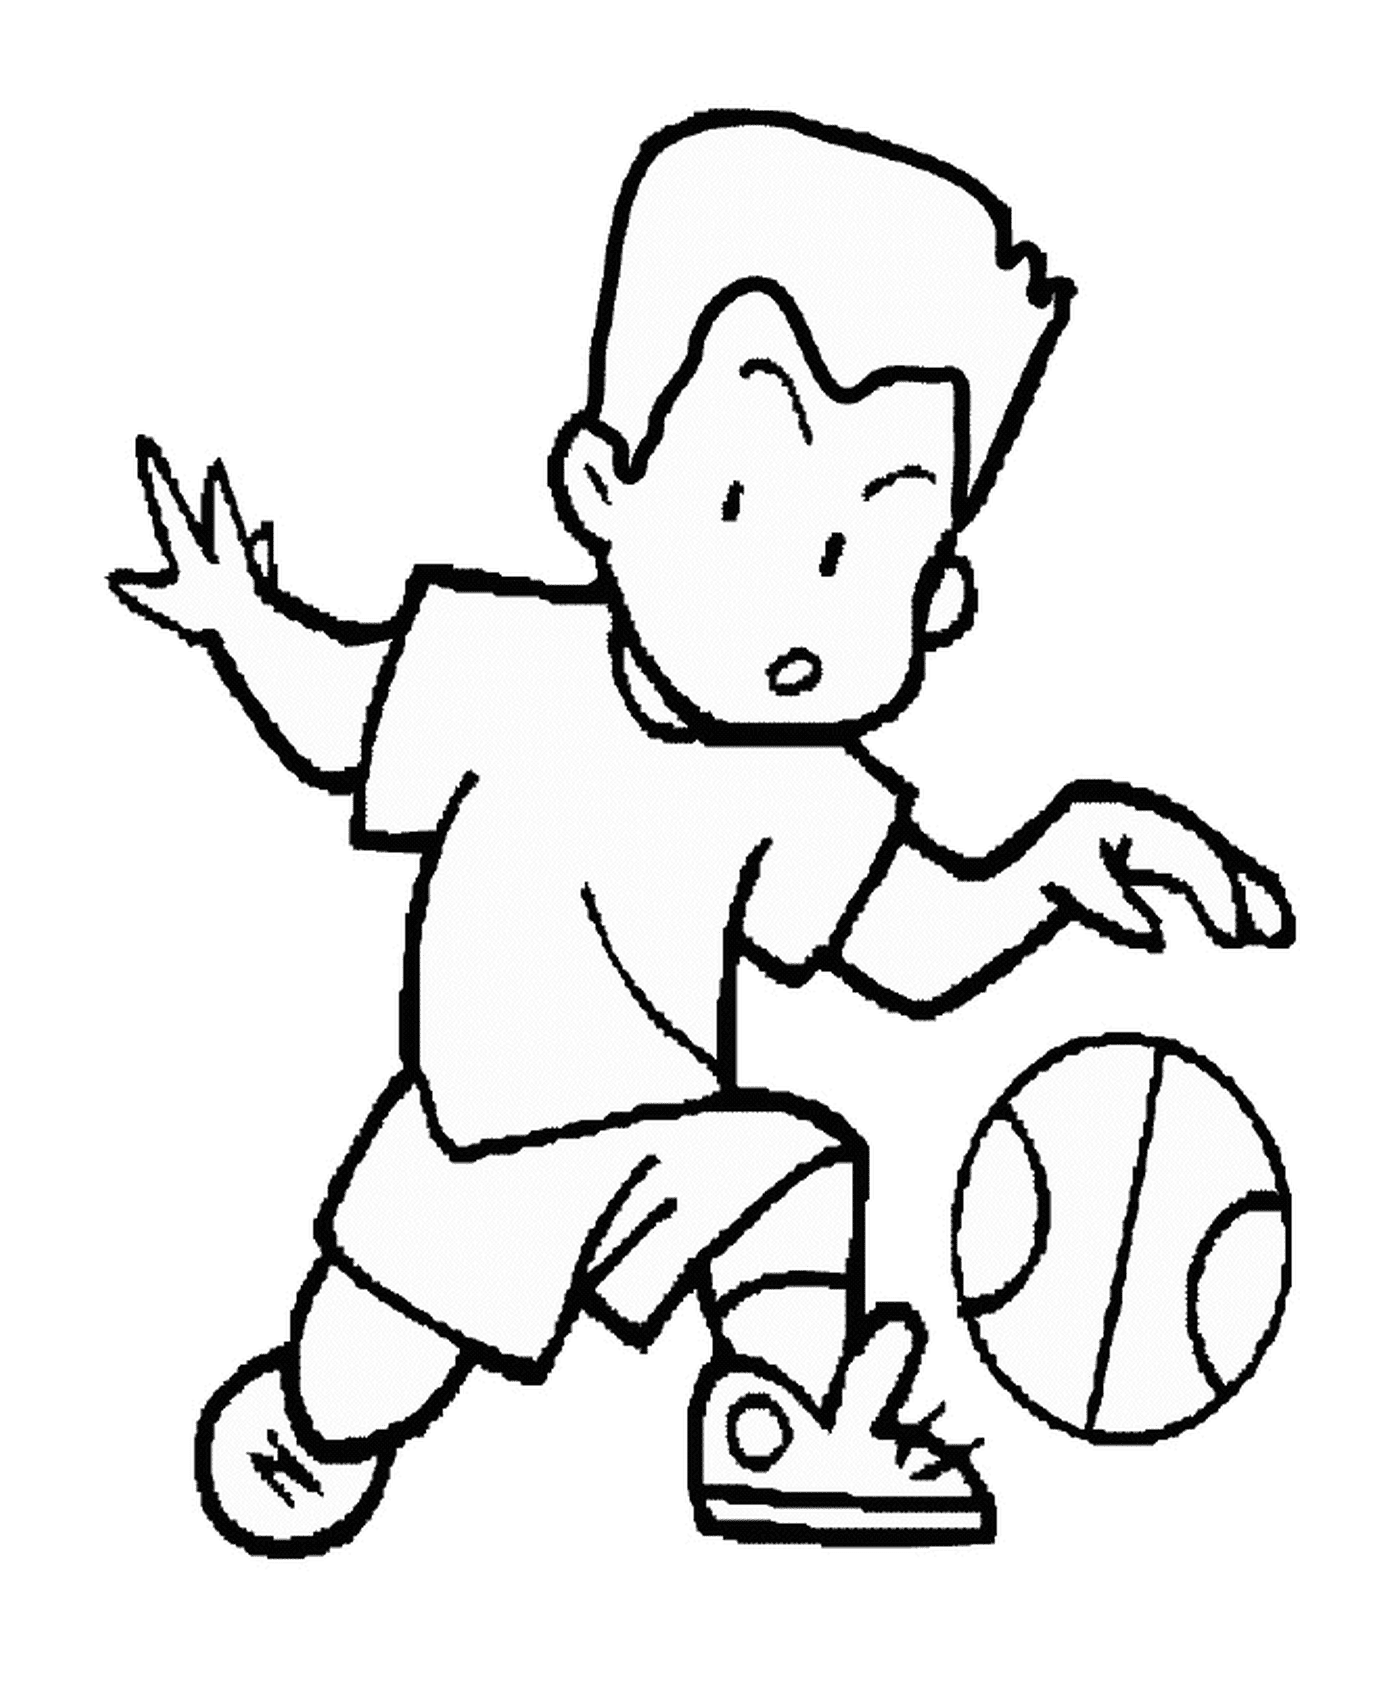  बॉल के गेंद के साथ एक बच्चा 